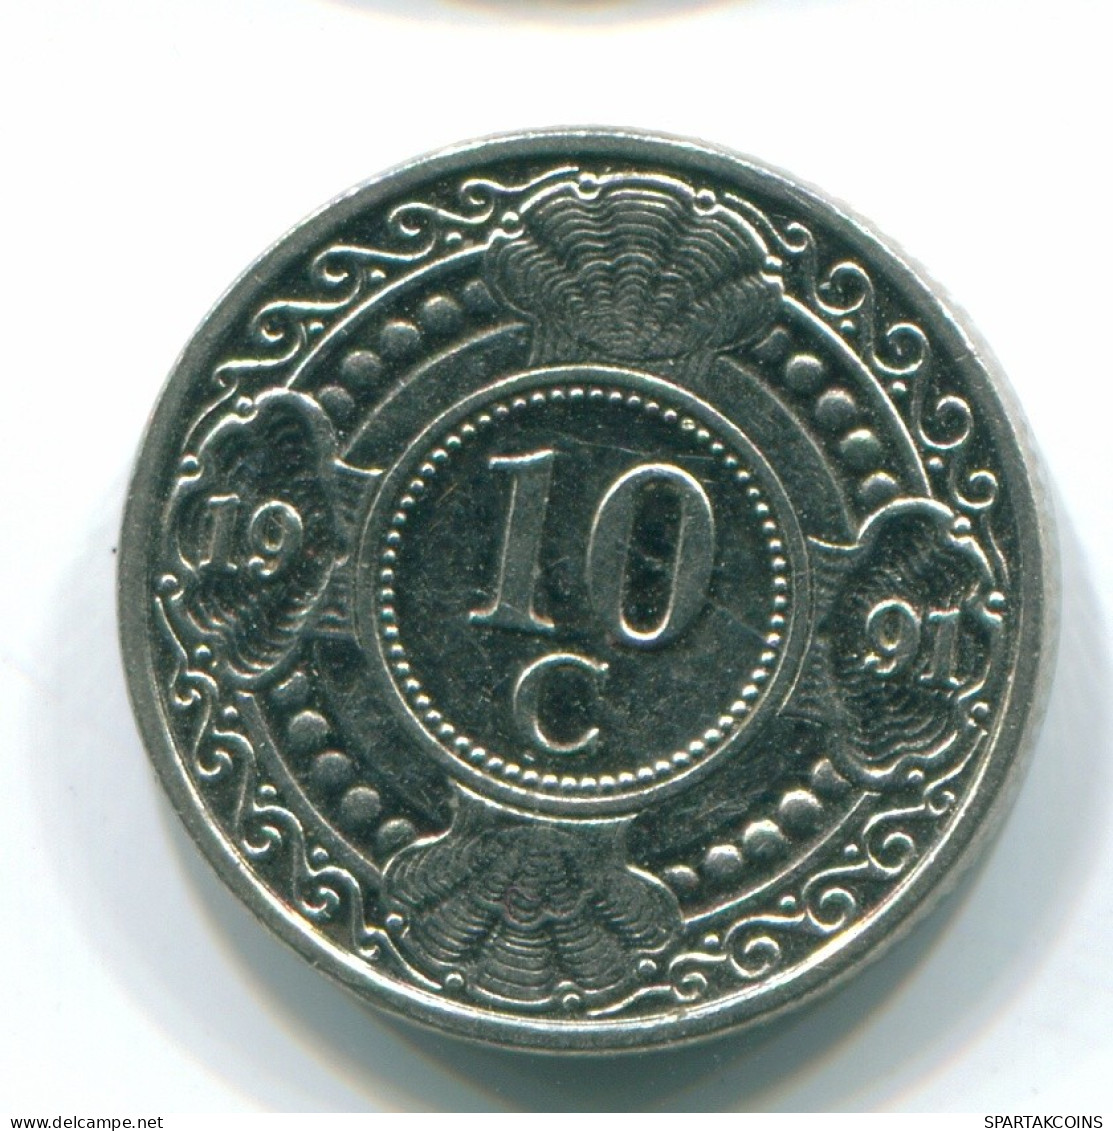 10 CENTS 1991 NETHERLANDS ANTILLES Nickel Colonial Coin #S11336.U.A - Antillas Neerlandesas